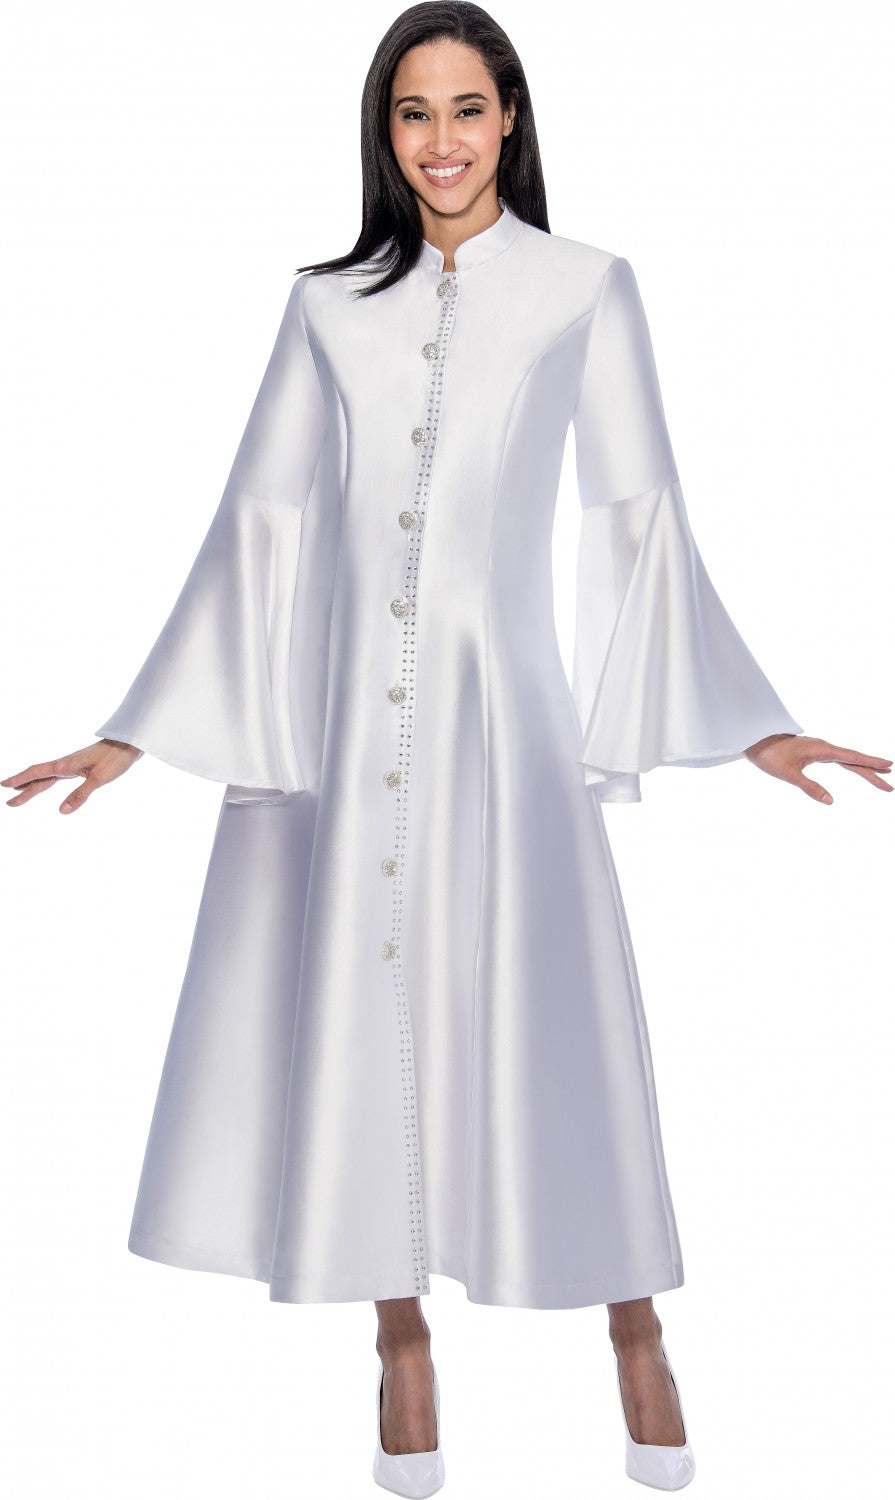 Women Church Robe RR9031C-White - Church Suits For Less